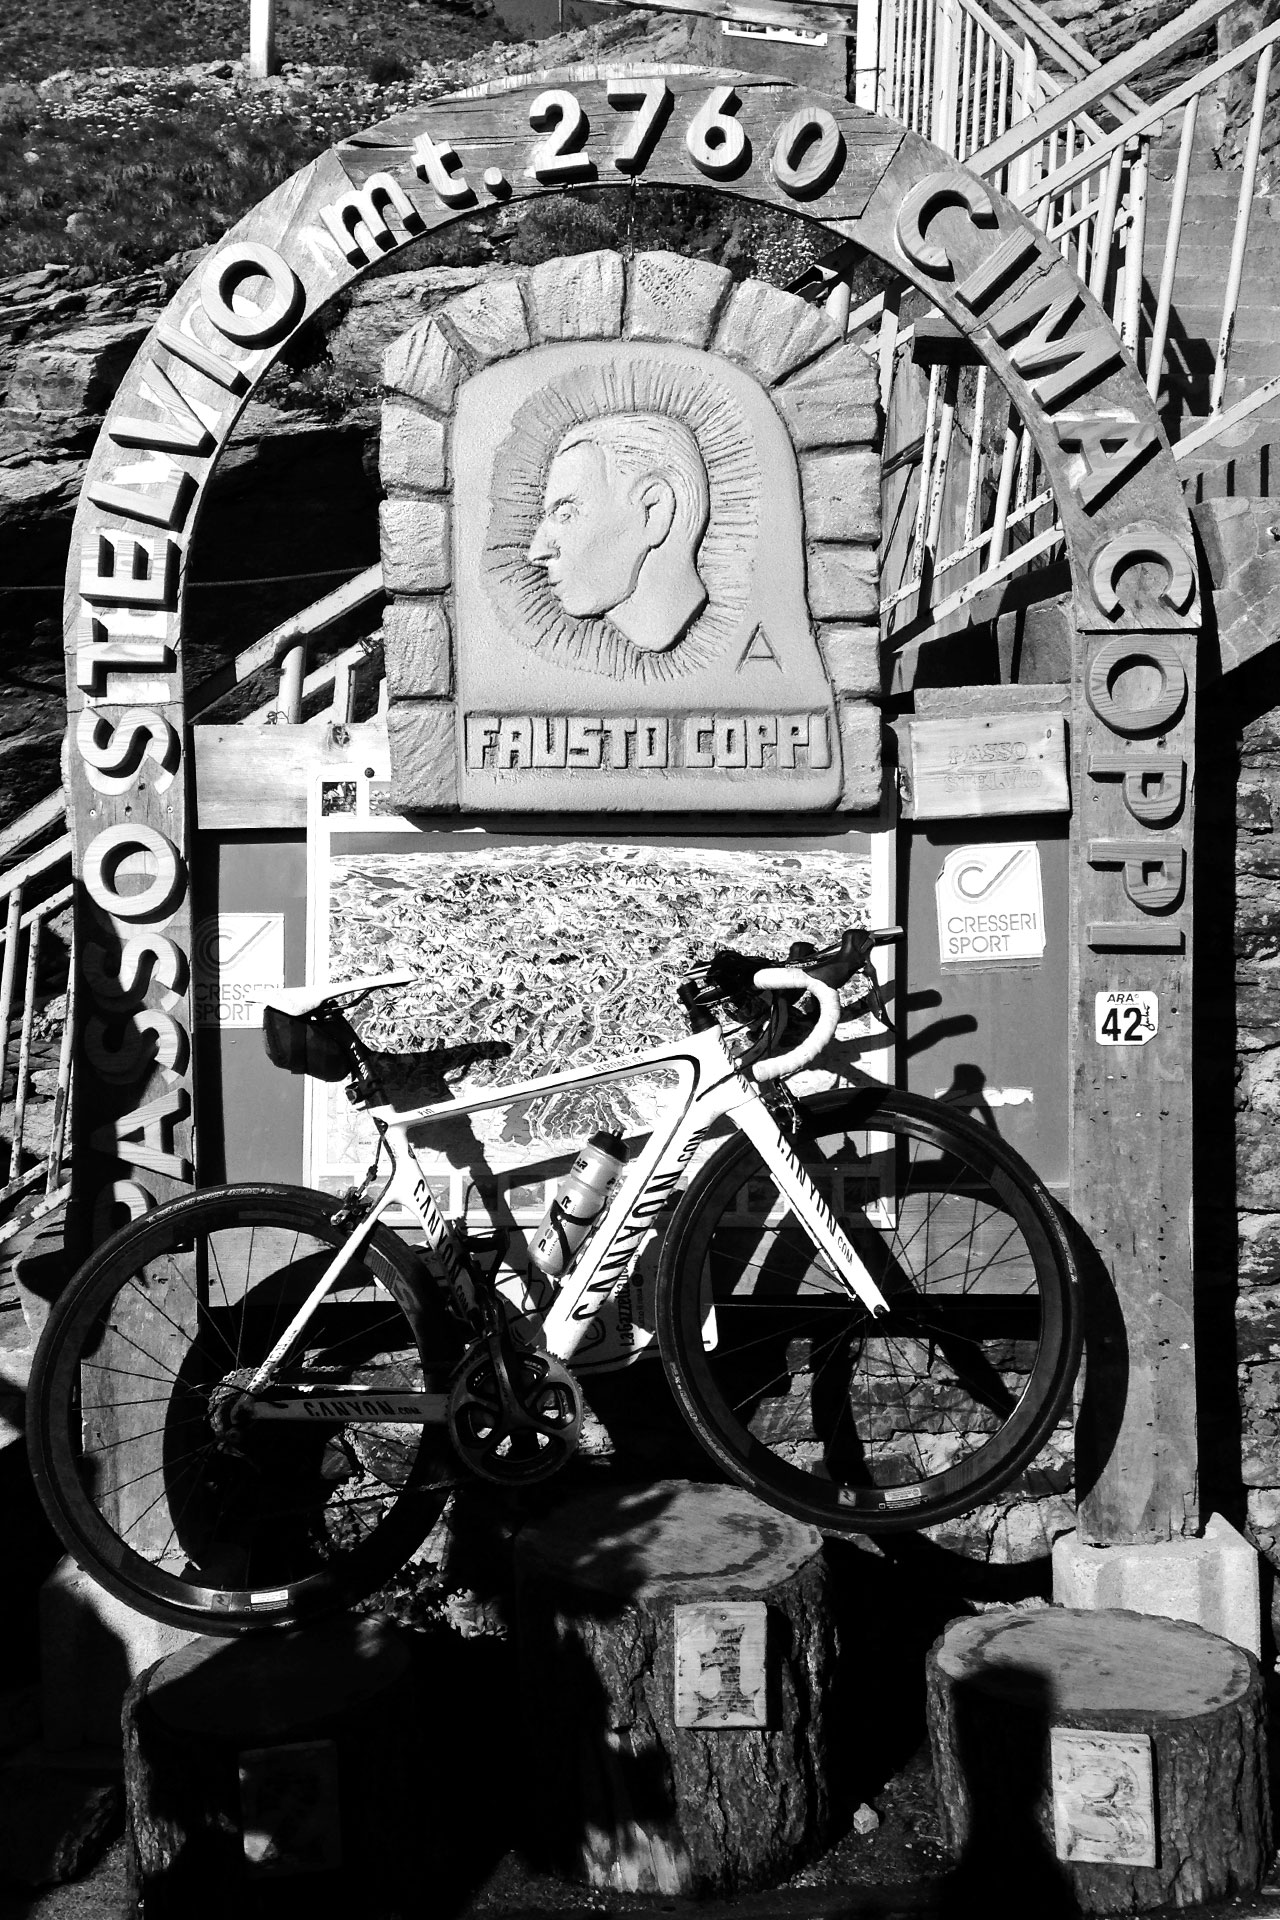 DAS STILFSER JOCH 48 Kehren in Fels gemeisselt / Ein Denkmal für einen der größten italienischen Radfahrer der Vergangenheit: Fausto Coppi © stefandrexl.de